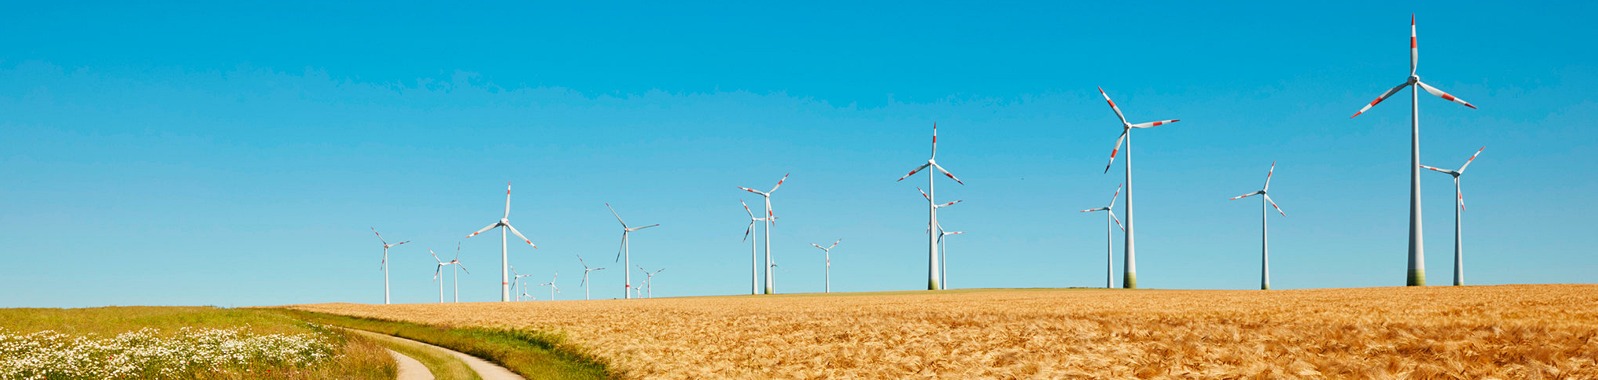 Wind power turbines in field